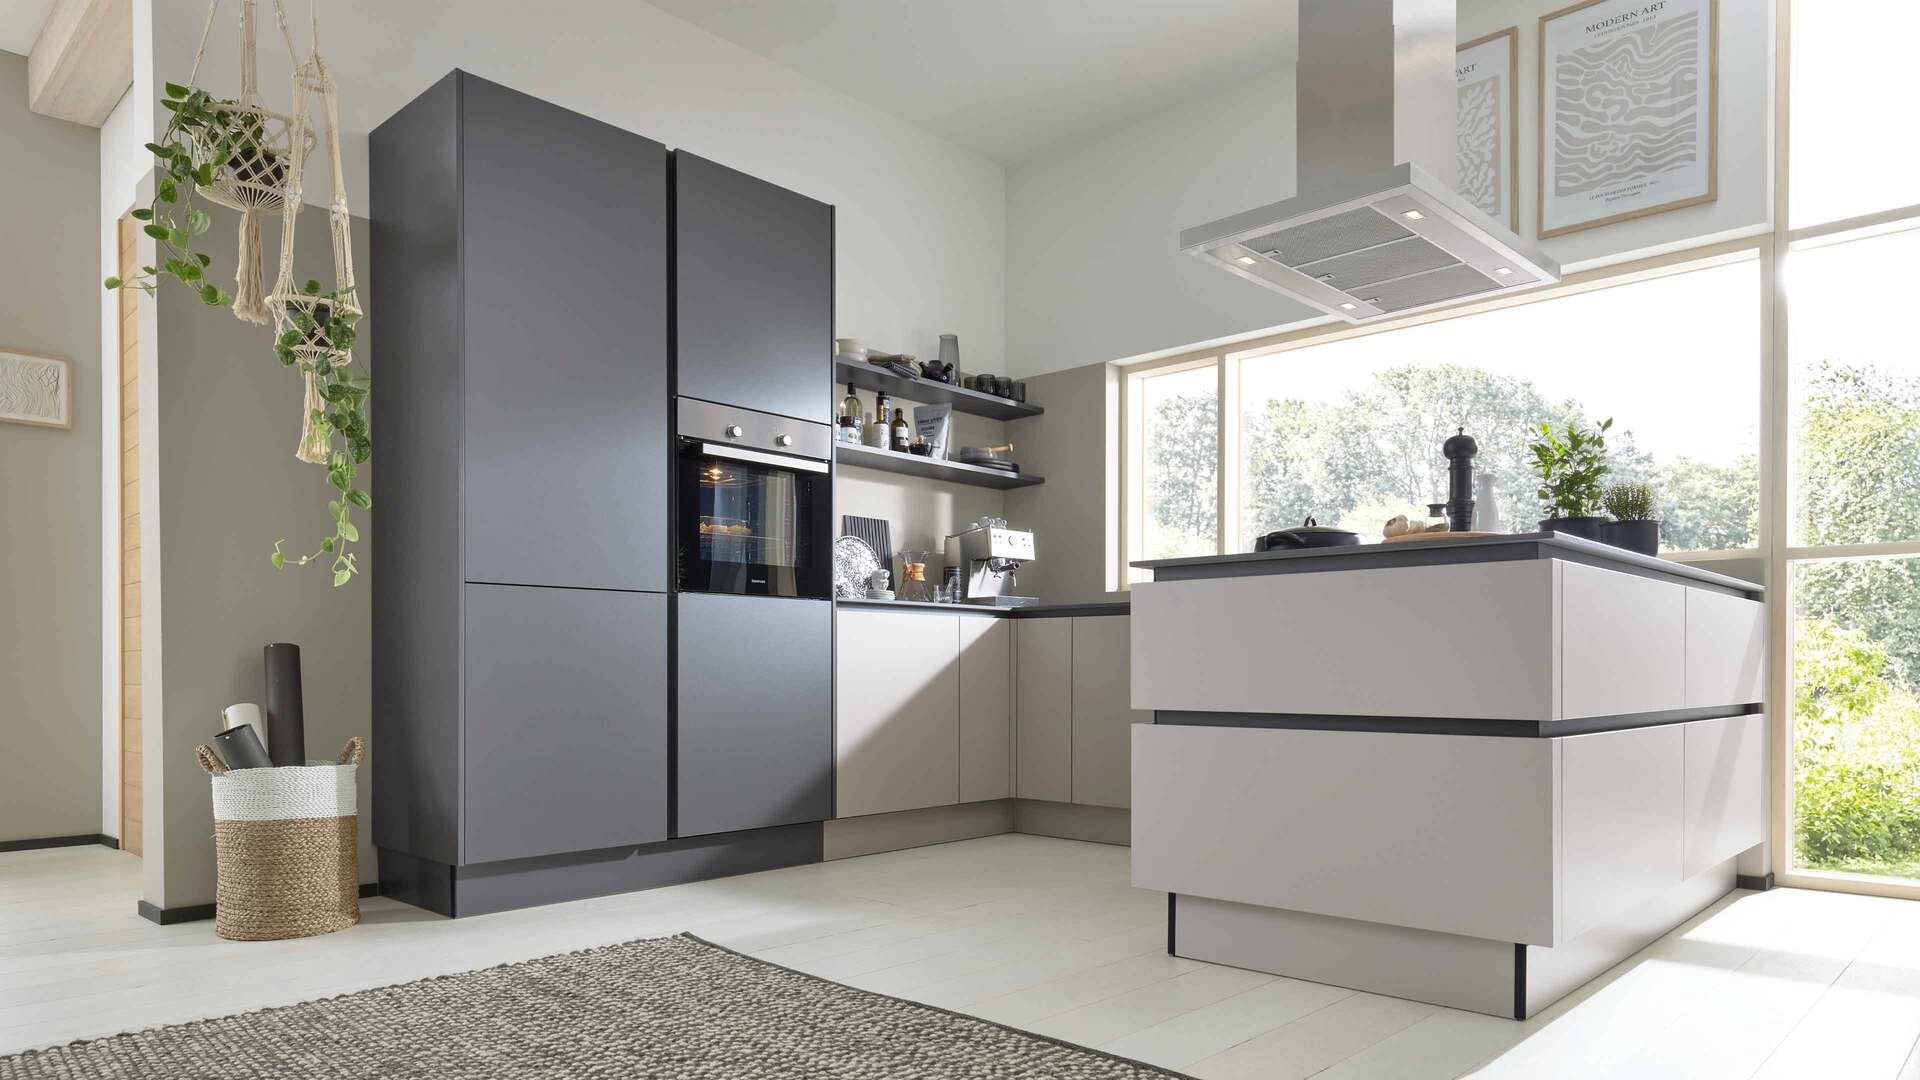 Interliving Küche Serie 3060 mit Constructa Einbaugeräten